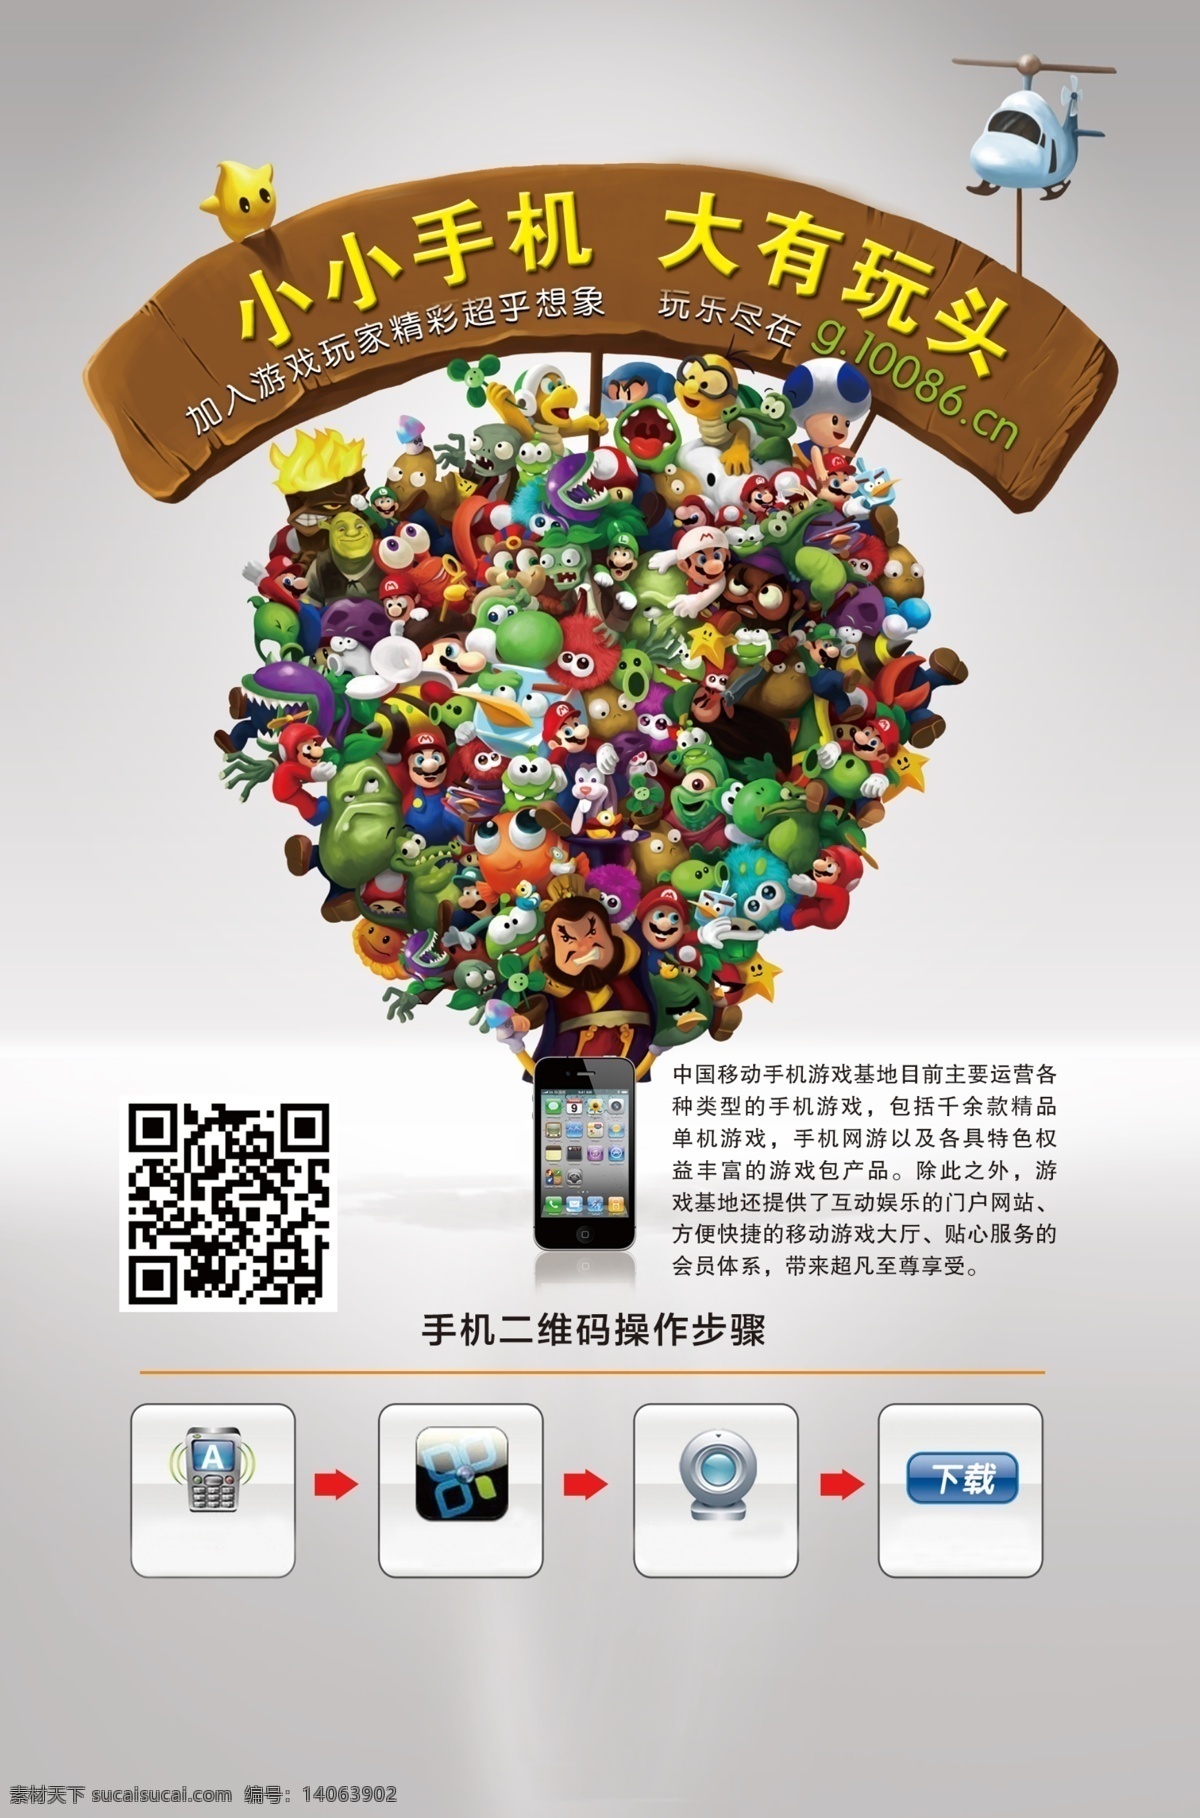 二维码 广告设计模板 手机 手机游戏 书 源文件 模板下载 的卡 通 手机游戏人物 其他海报设计